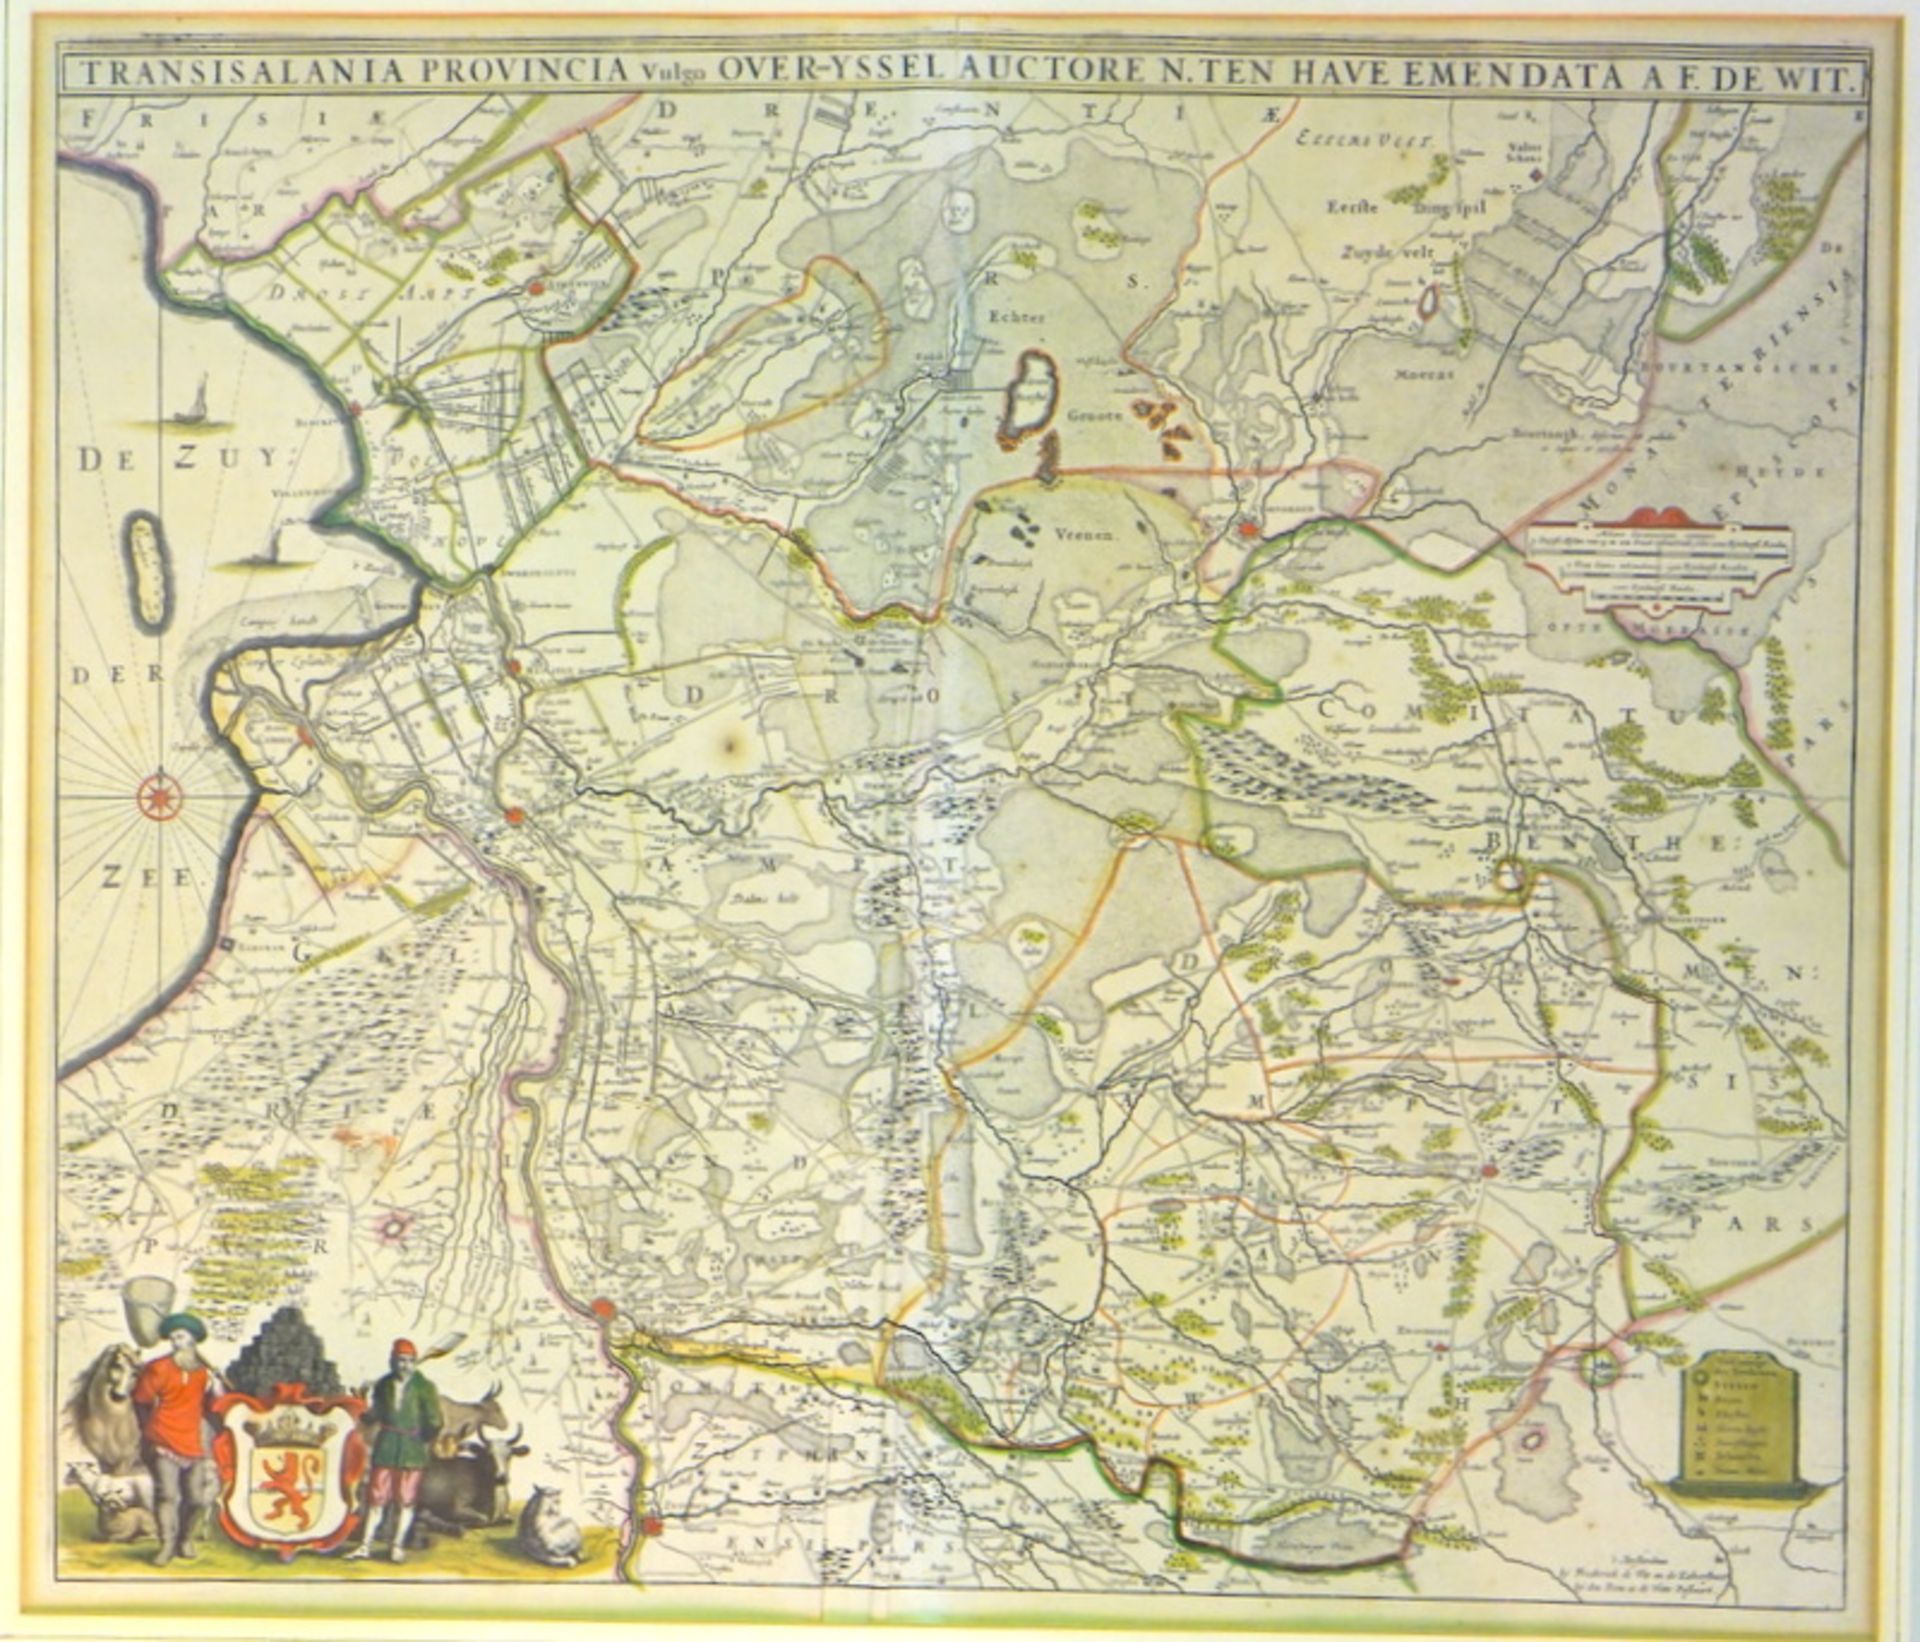 Frederick de Wit, Landkarte der Provinz Overijssel, ca. 1690